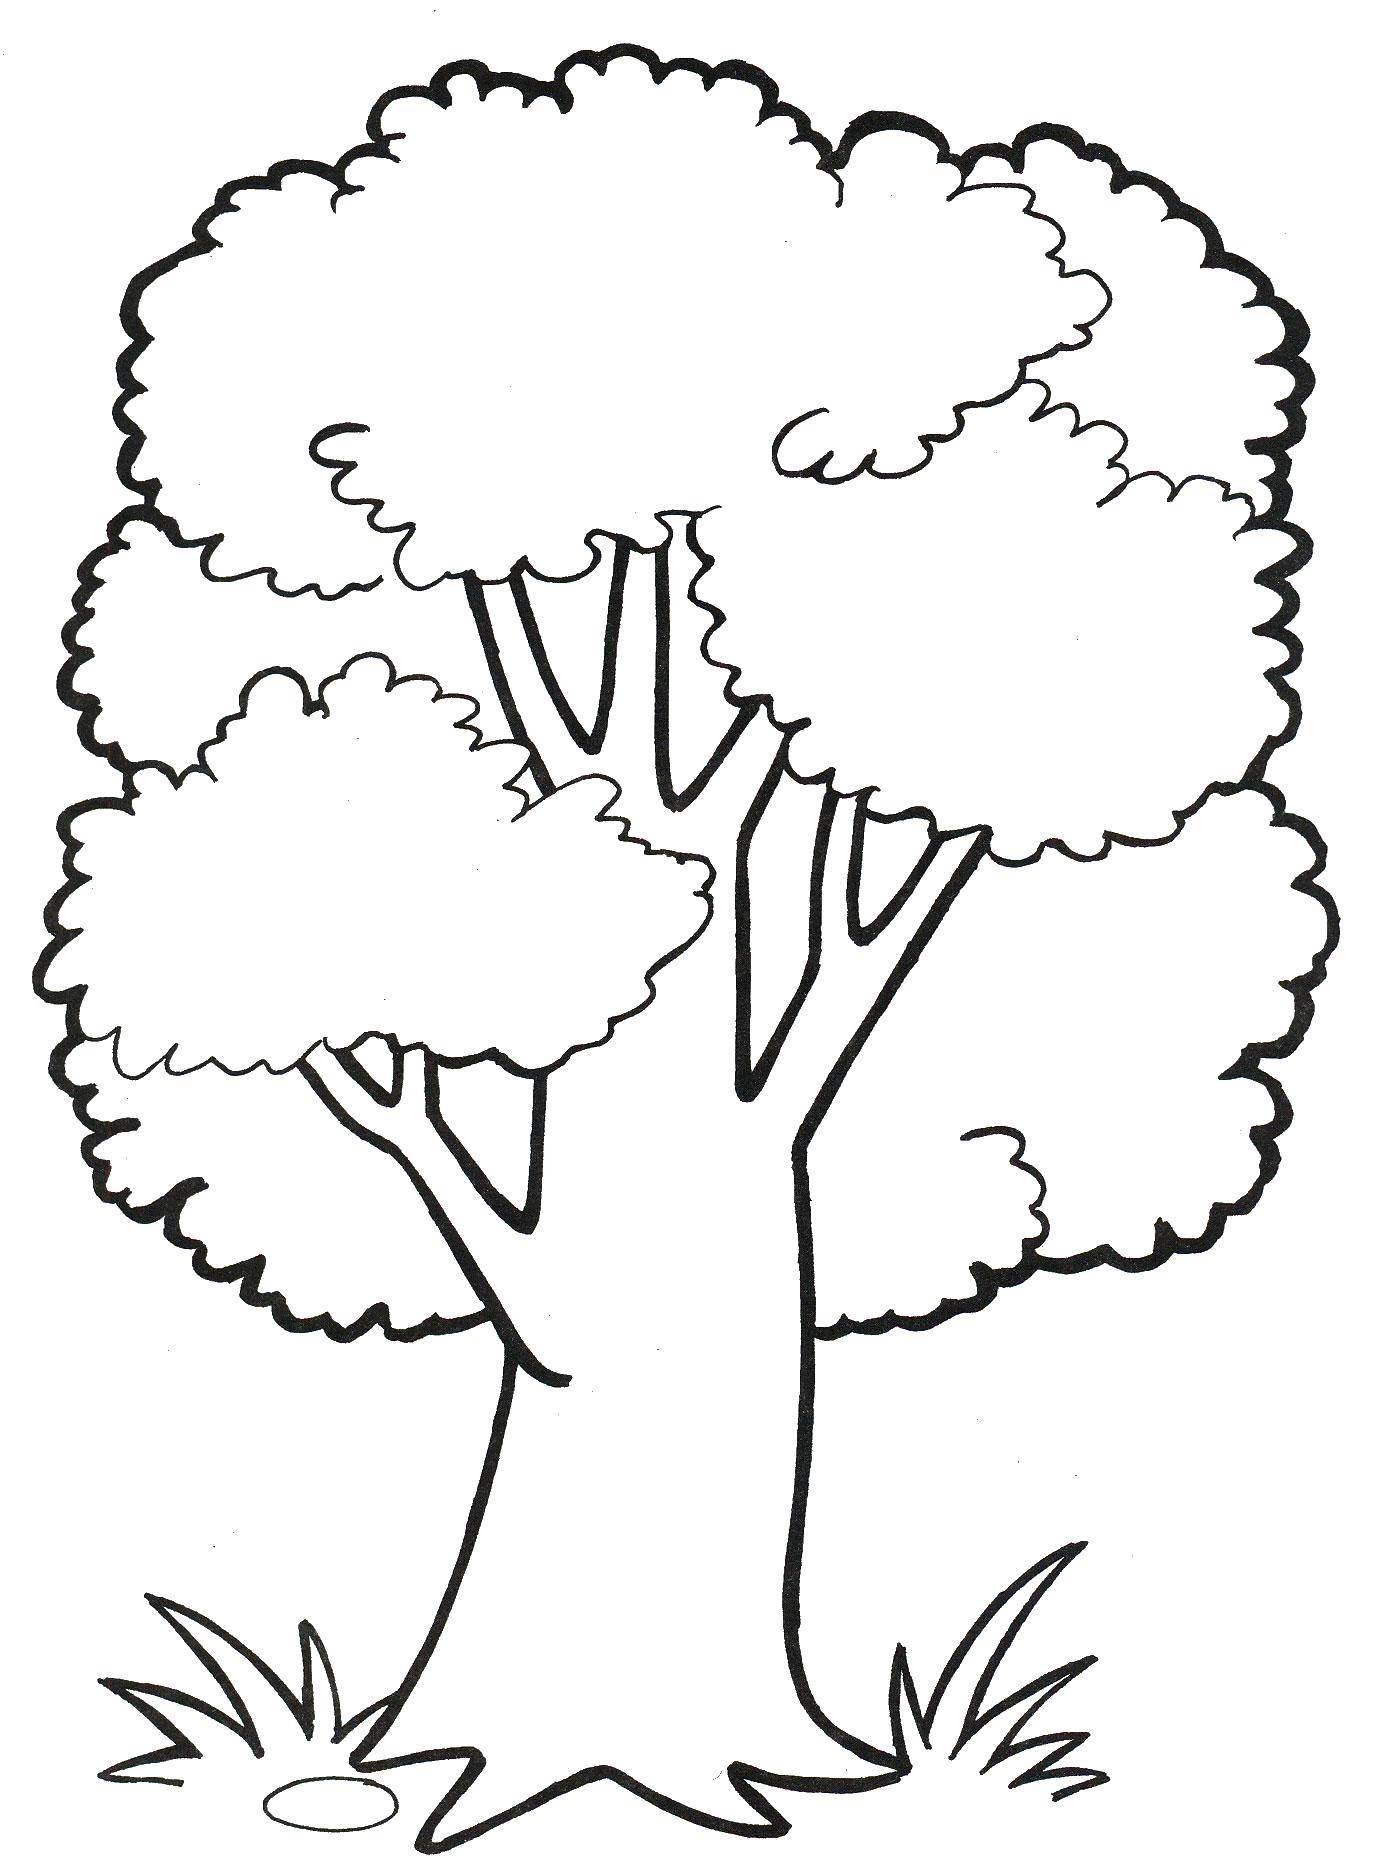 Дерево для раскрашивания для детей